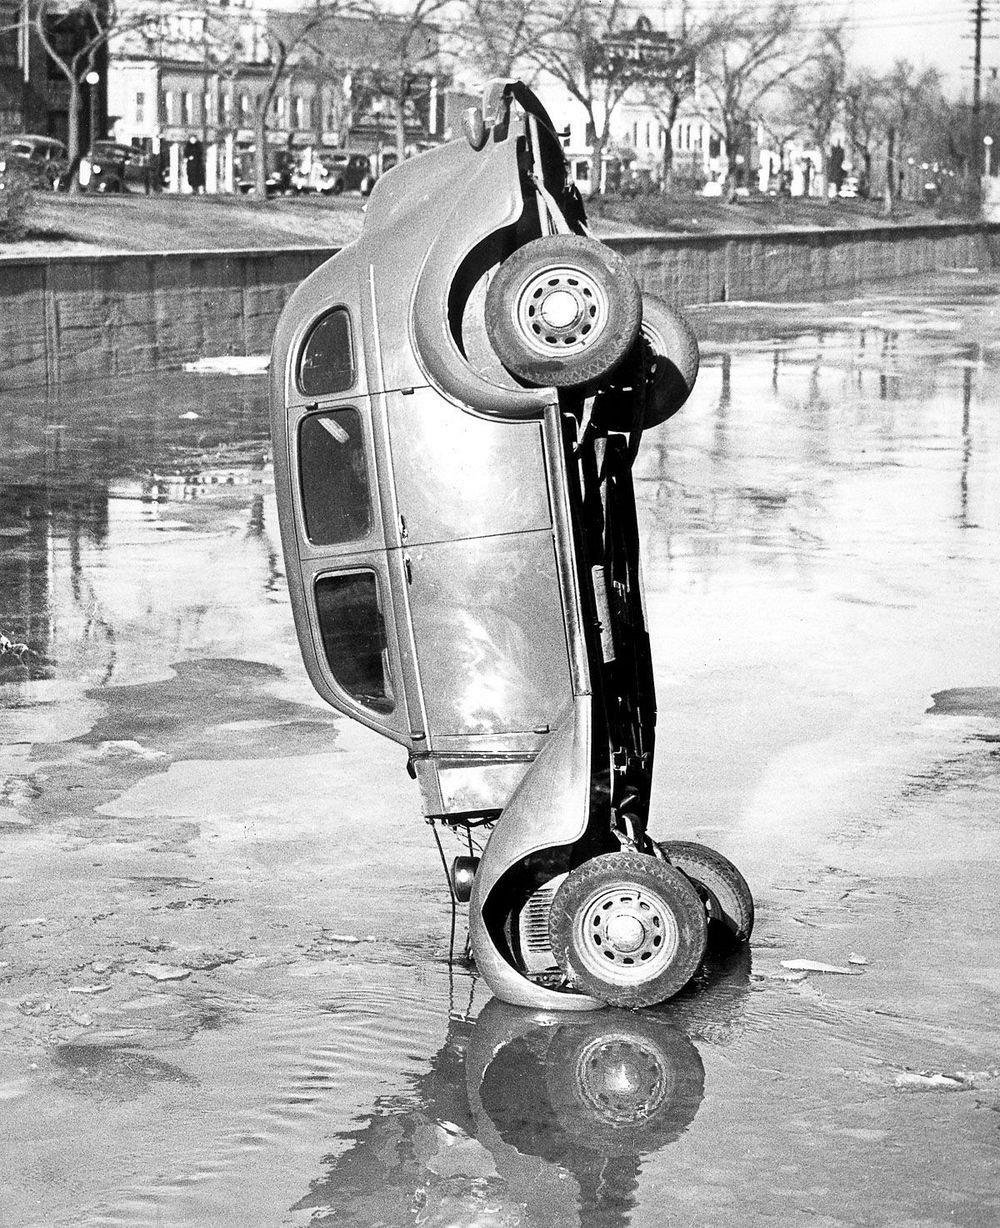 Необычные аварии и впечатляющие ДТП в середине прошлого века Лесли, фотографий, Джонс, почти, поворотах, сотни, сделал, фотосъёмкойОн, занят, постоянно, чтобы, хаоса, достаточно, улицах, Фотограф, крутых, автомобильных, часто, грузоподъёмность, высокой